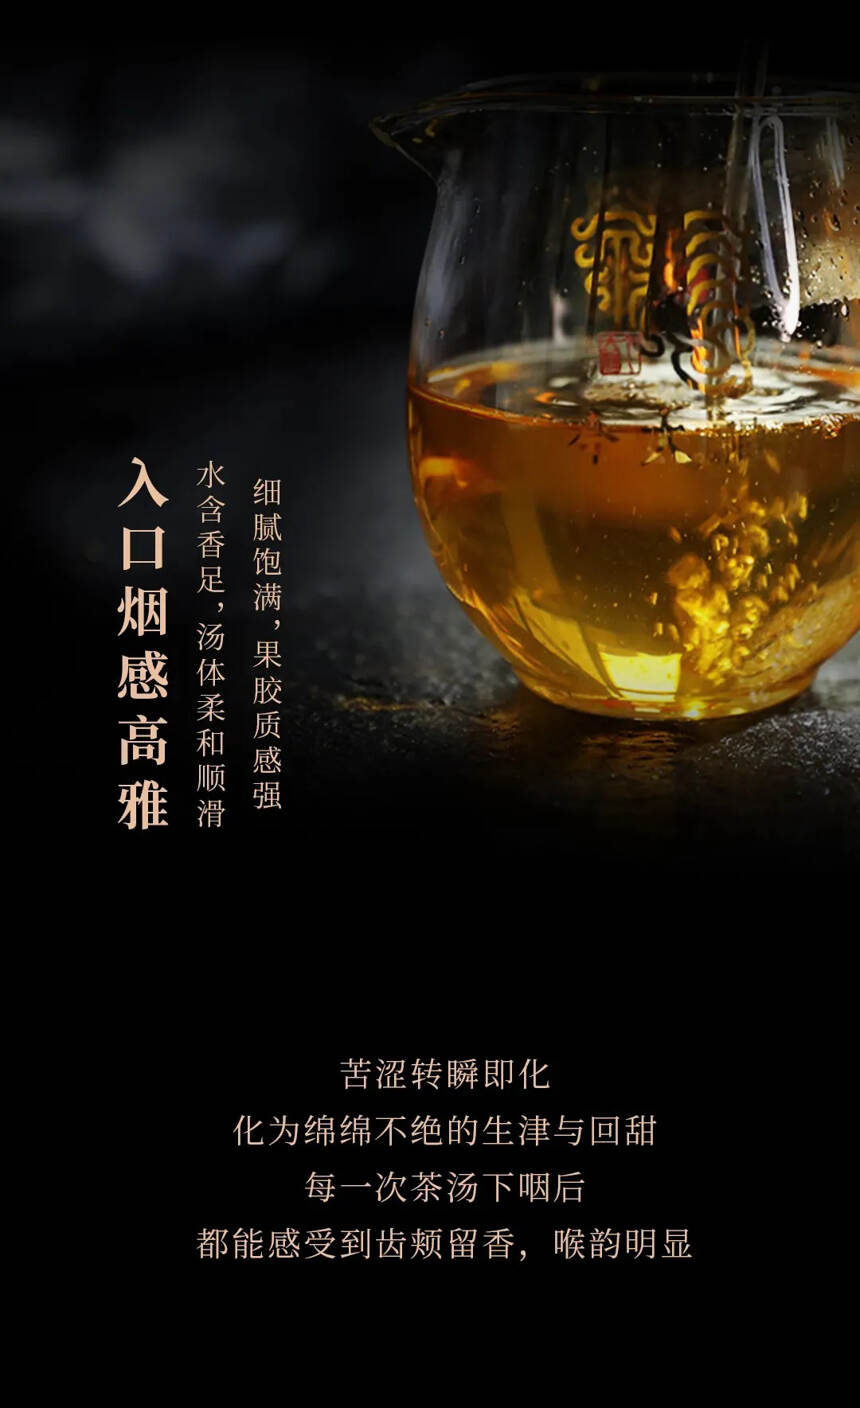 #今大福广州茶博会# #茶生活# 广州茶博会上呢！今